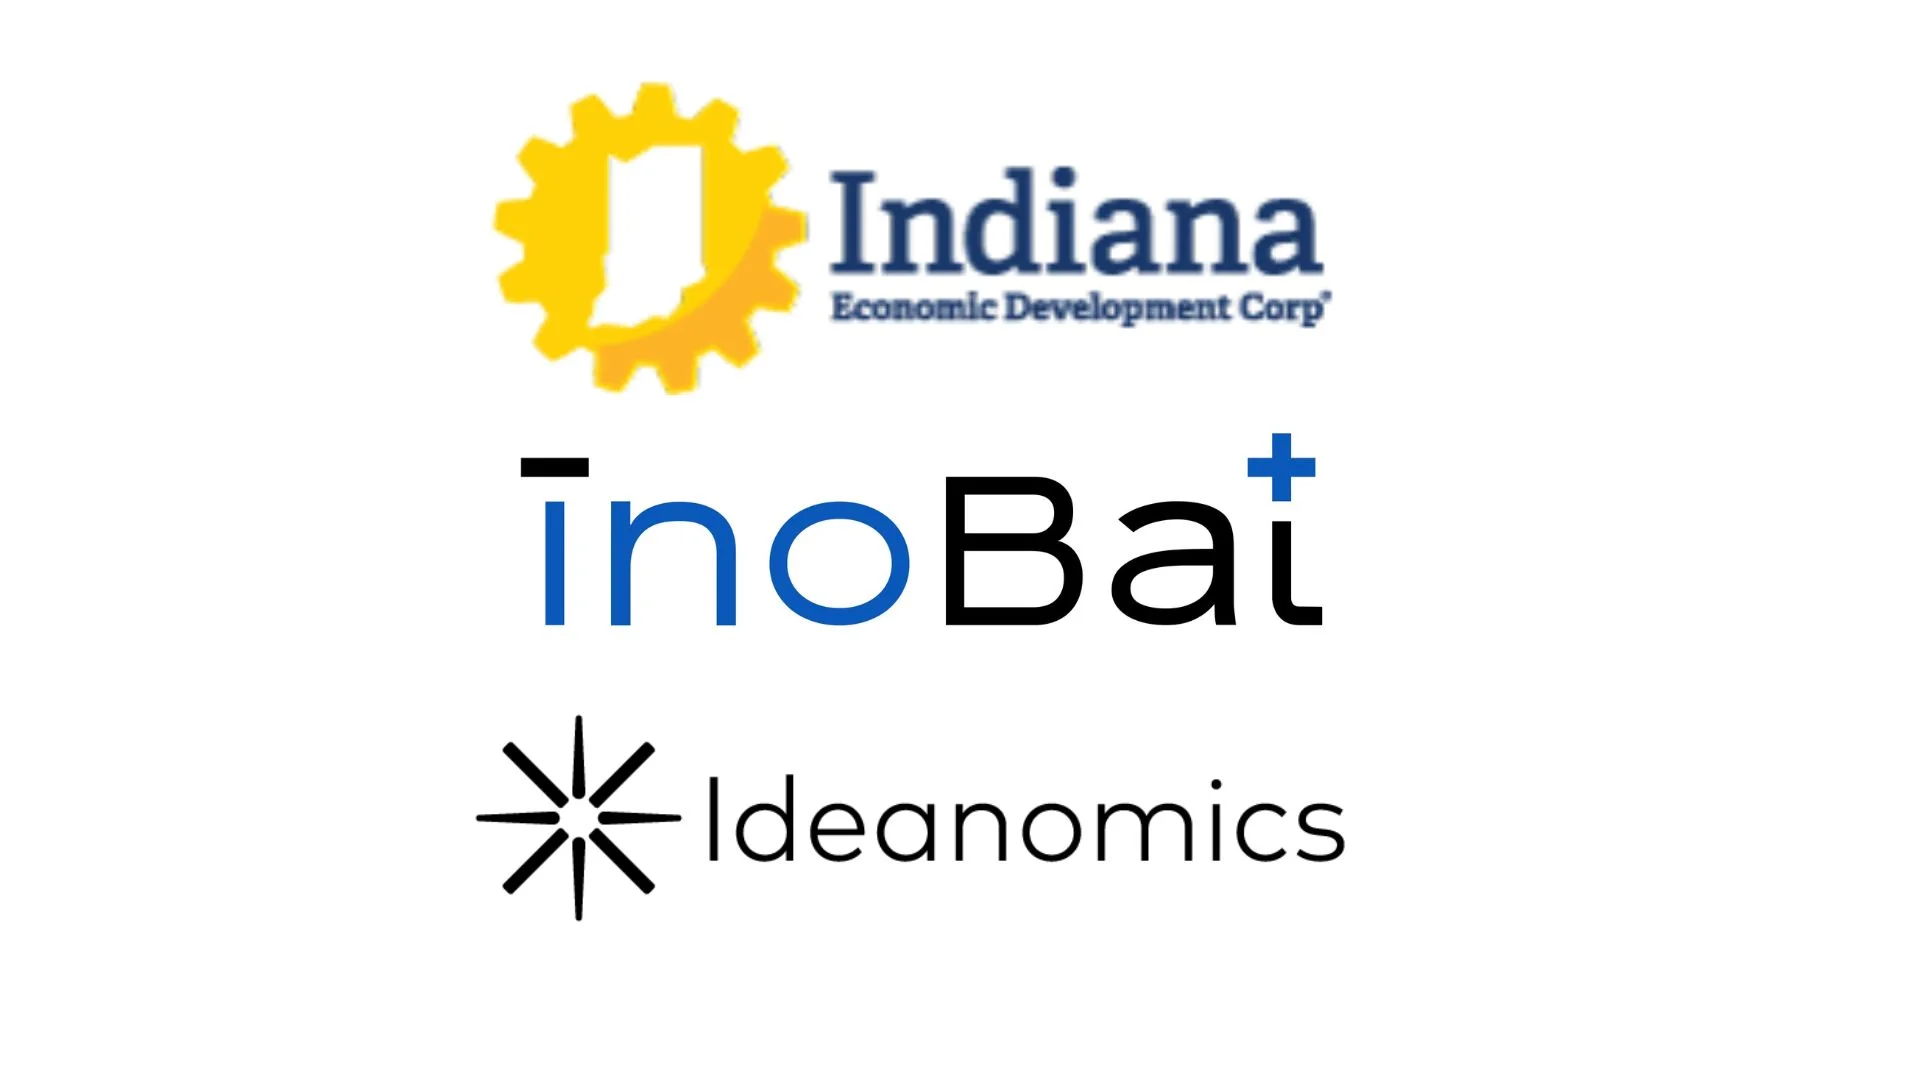 InoBat a Slovak Ideanomics zabezpečujú stimuly pre výskum a vývoj batérií v spoločnom podniku a výrobný závod v Indiane